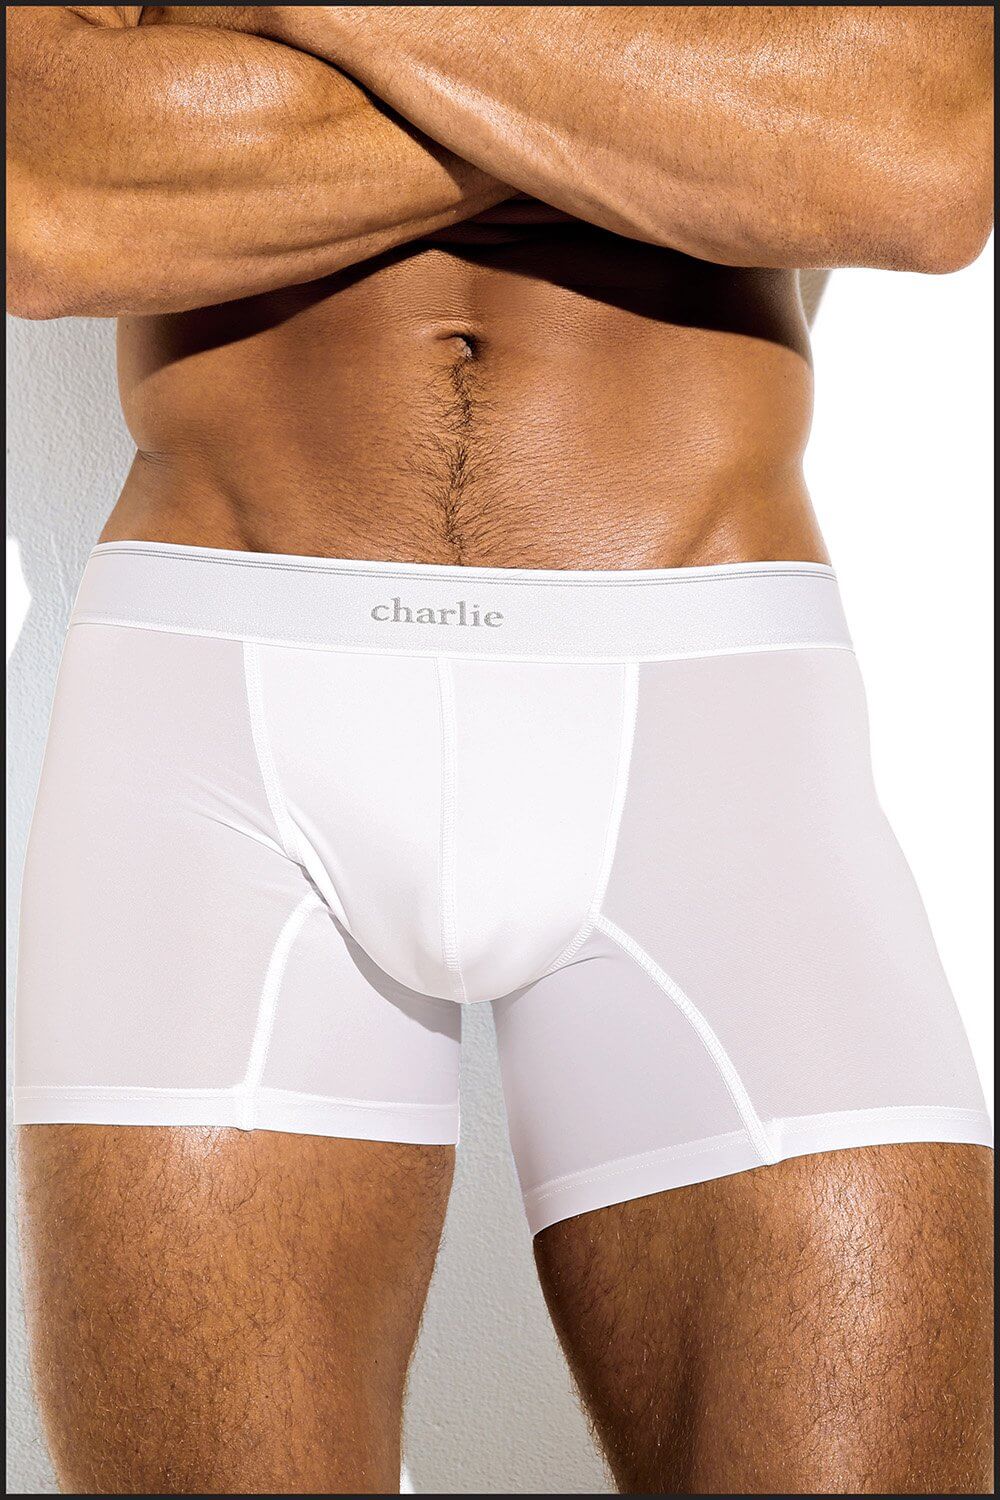 Male Sport Underwear Form, white plastic 3232 - Mobico - Mobico inc.